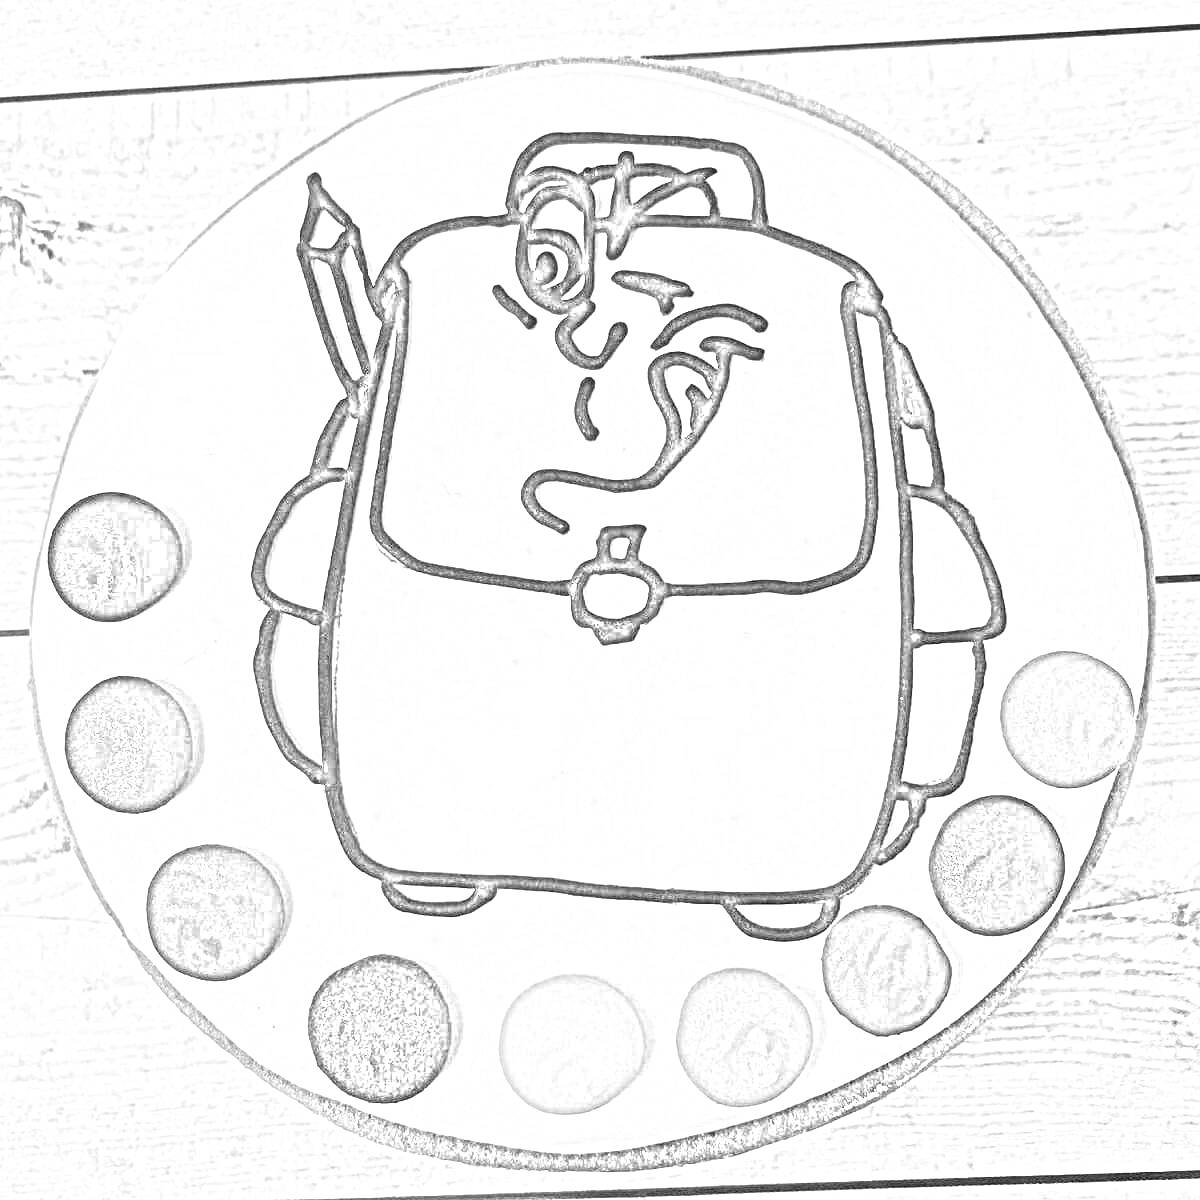 Пряник с изображением рюкзака, карандаша и цветных точек